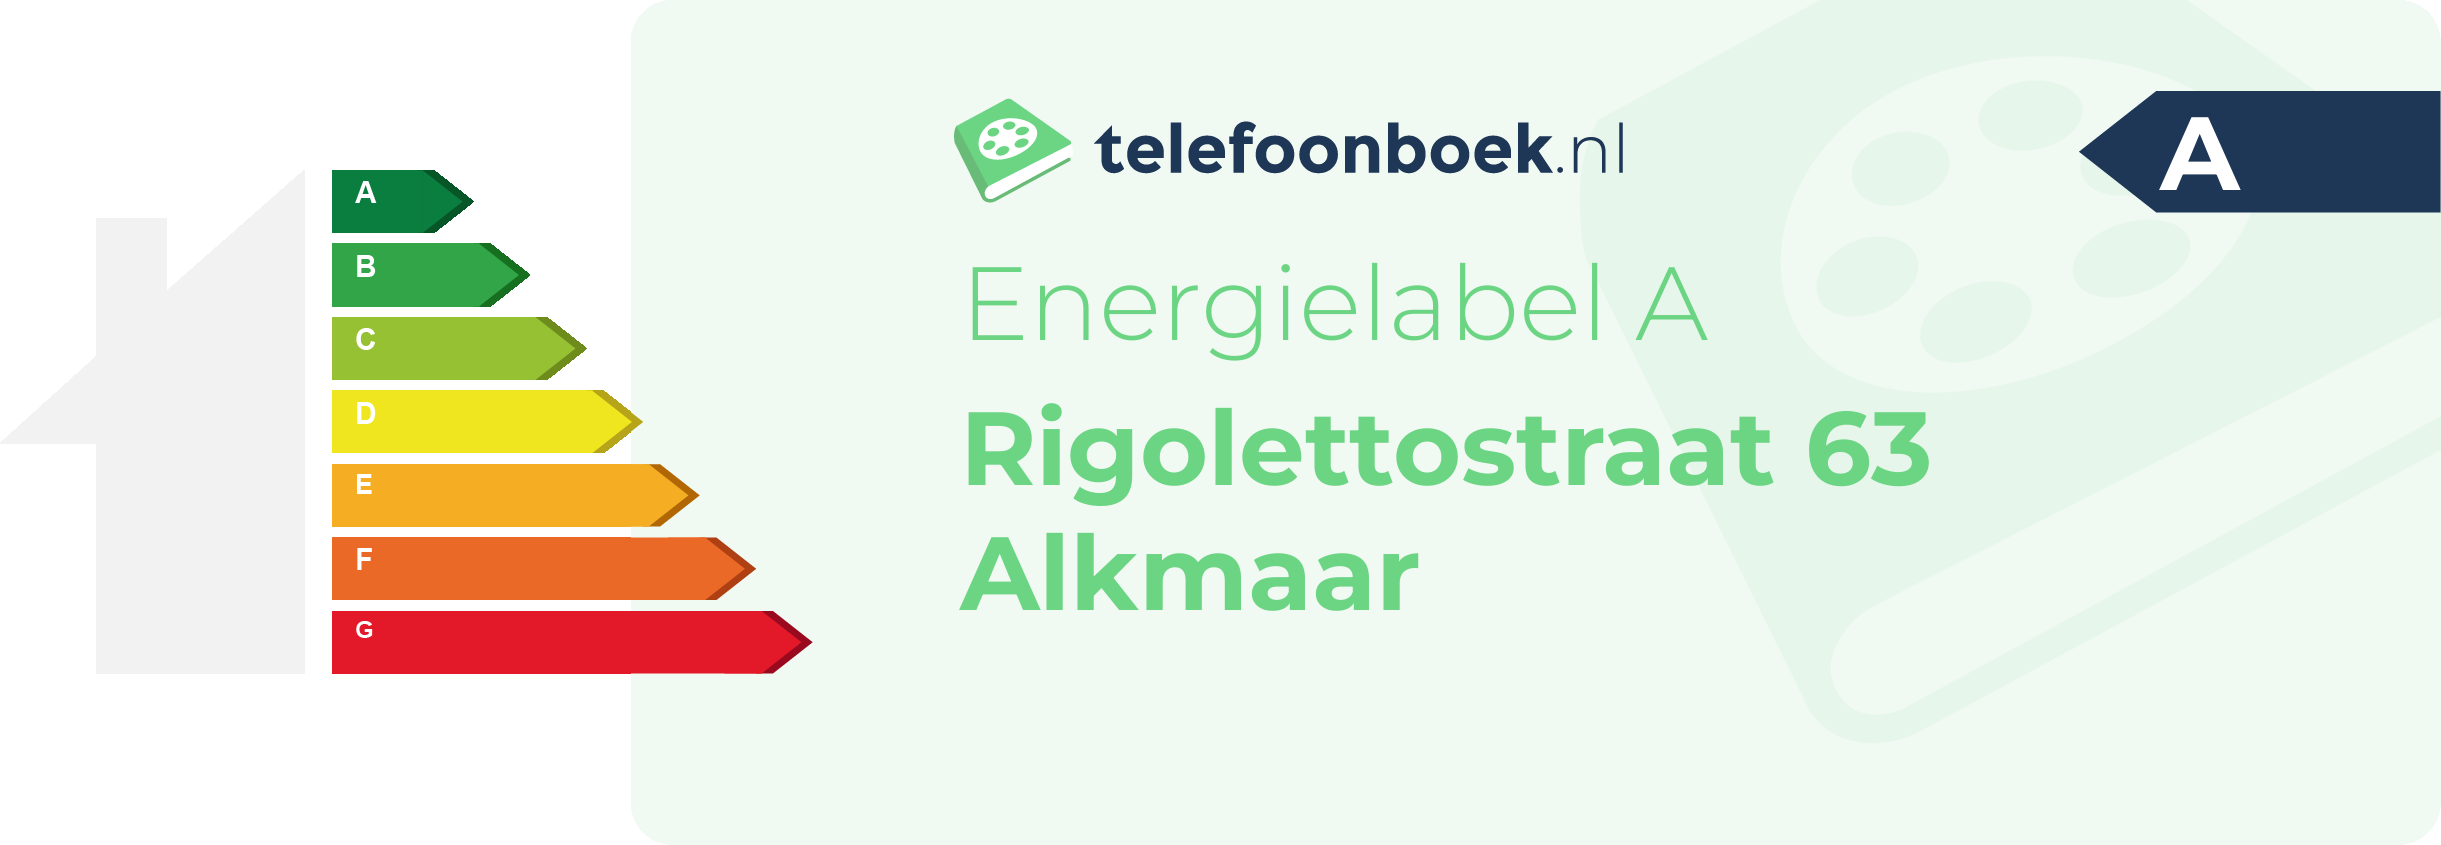 Energielabel Rigolettostraat 63 Alkmaar